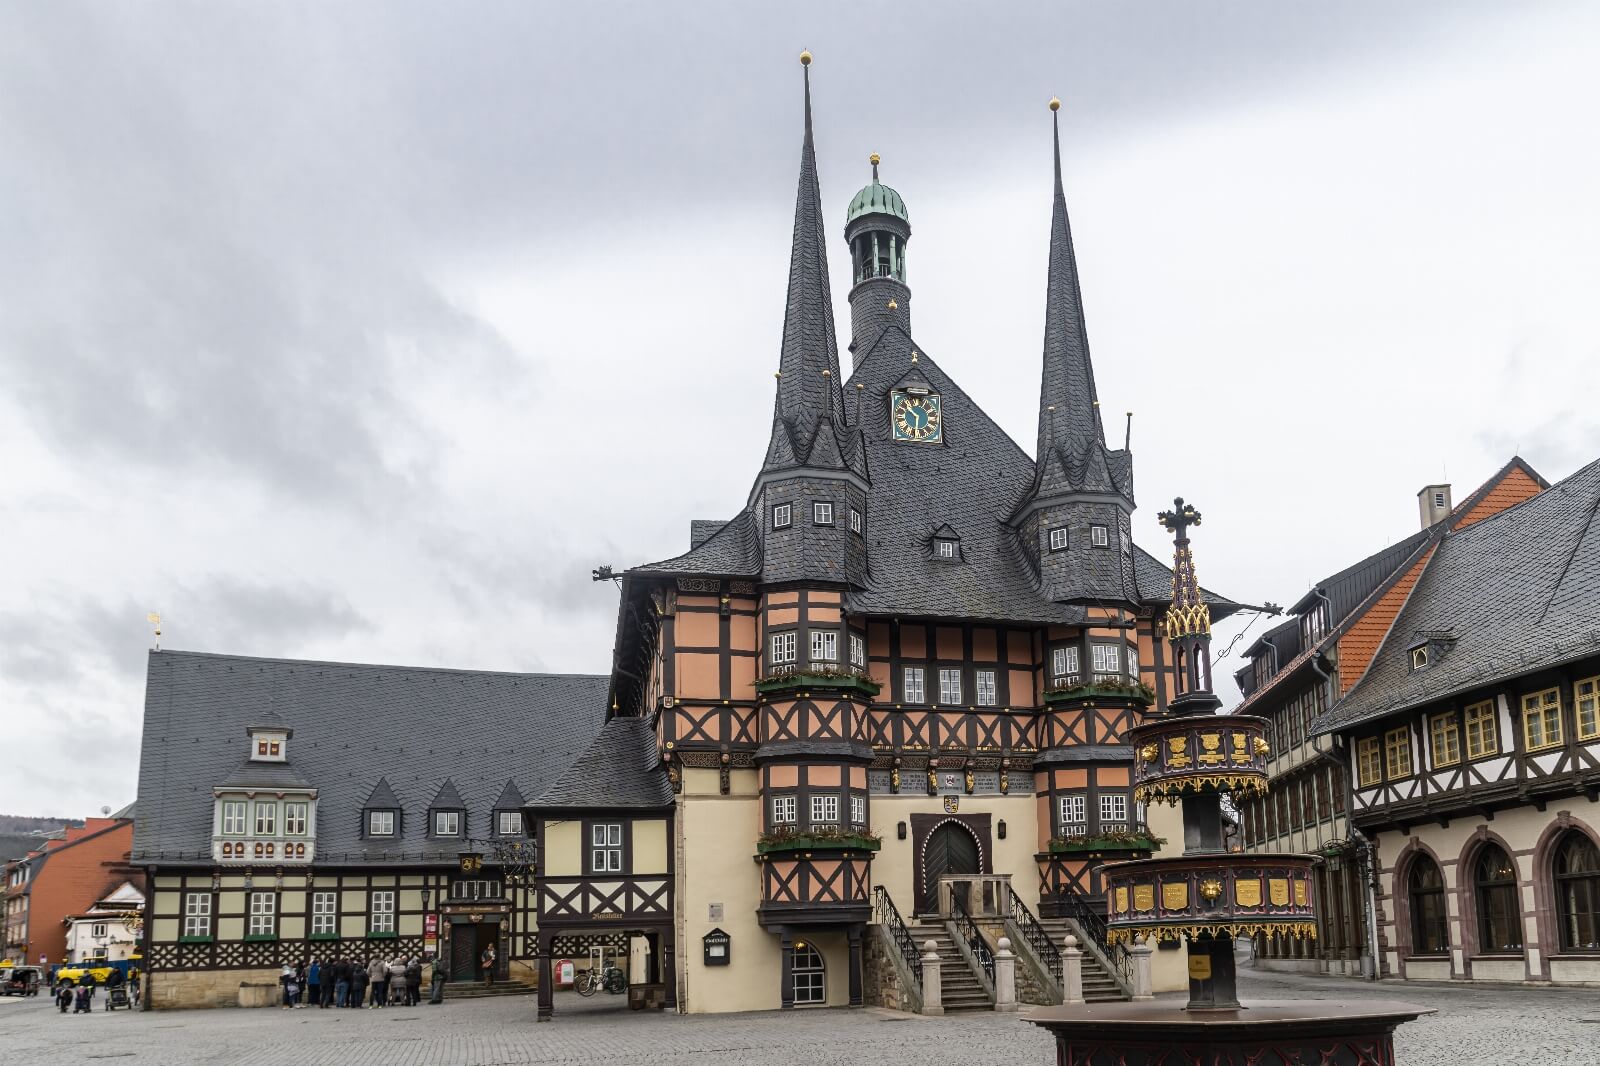 Image of Marktplatz, Wernigerode by Steven Godwin